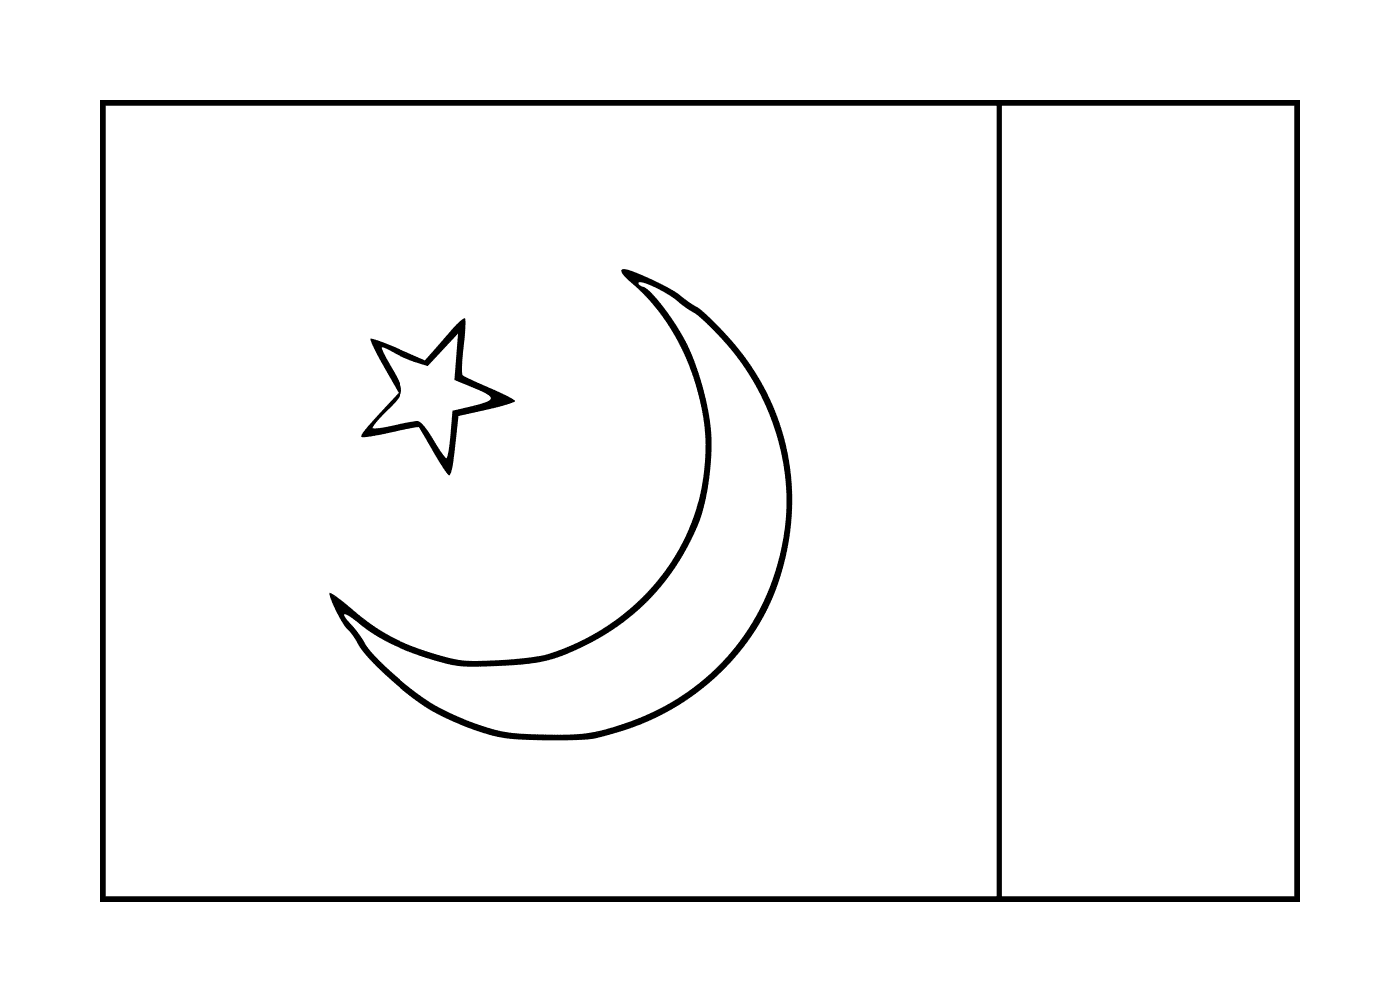  巴基斯坦国旗 